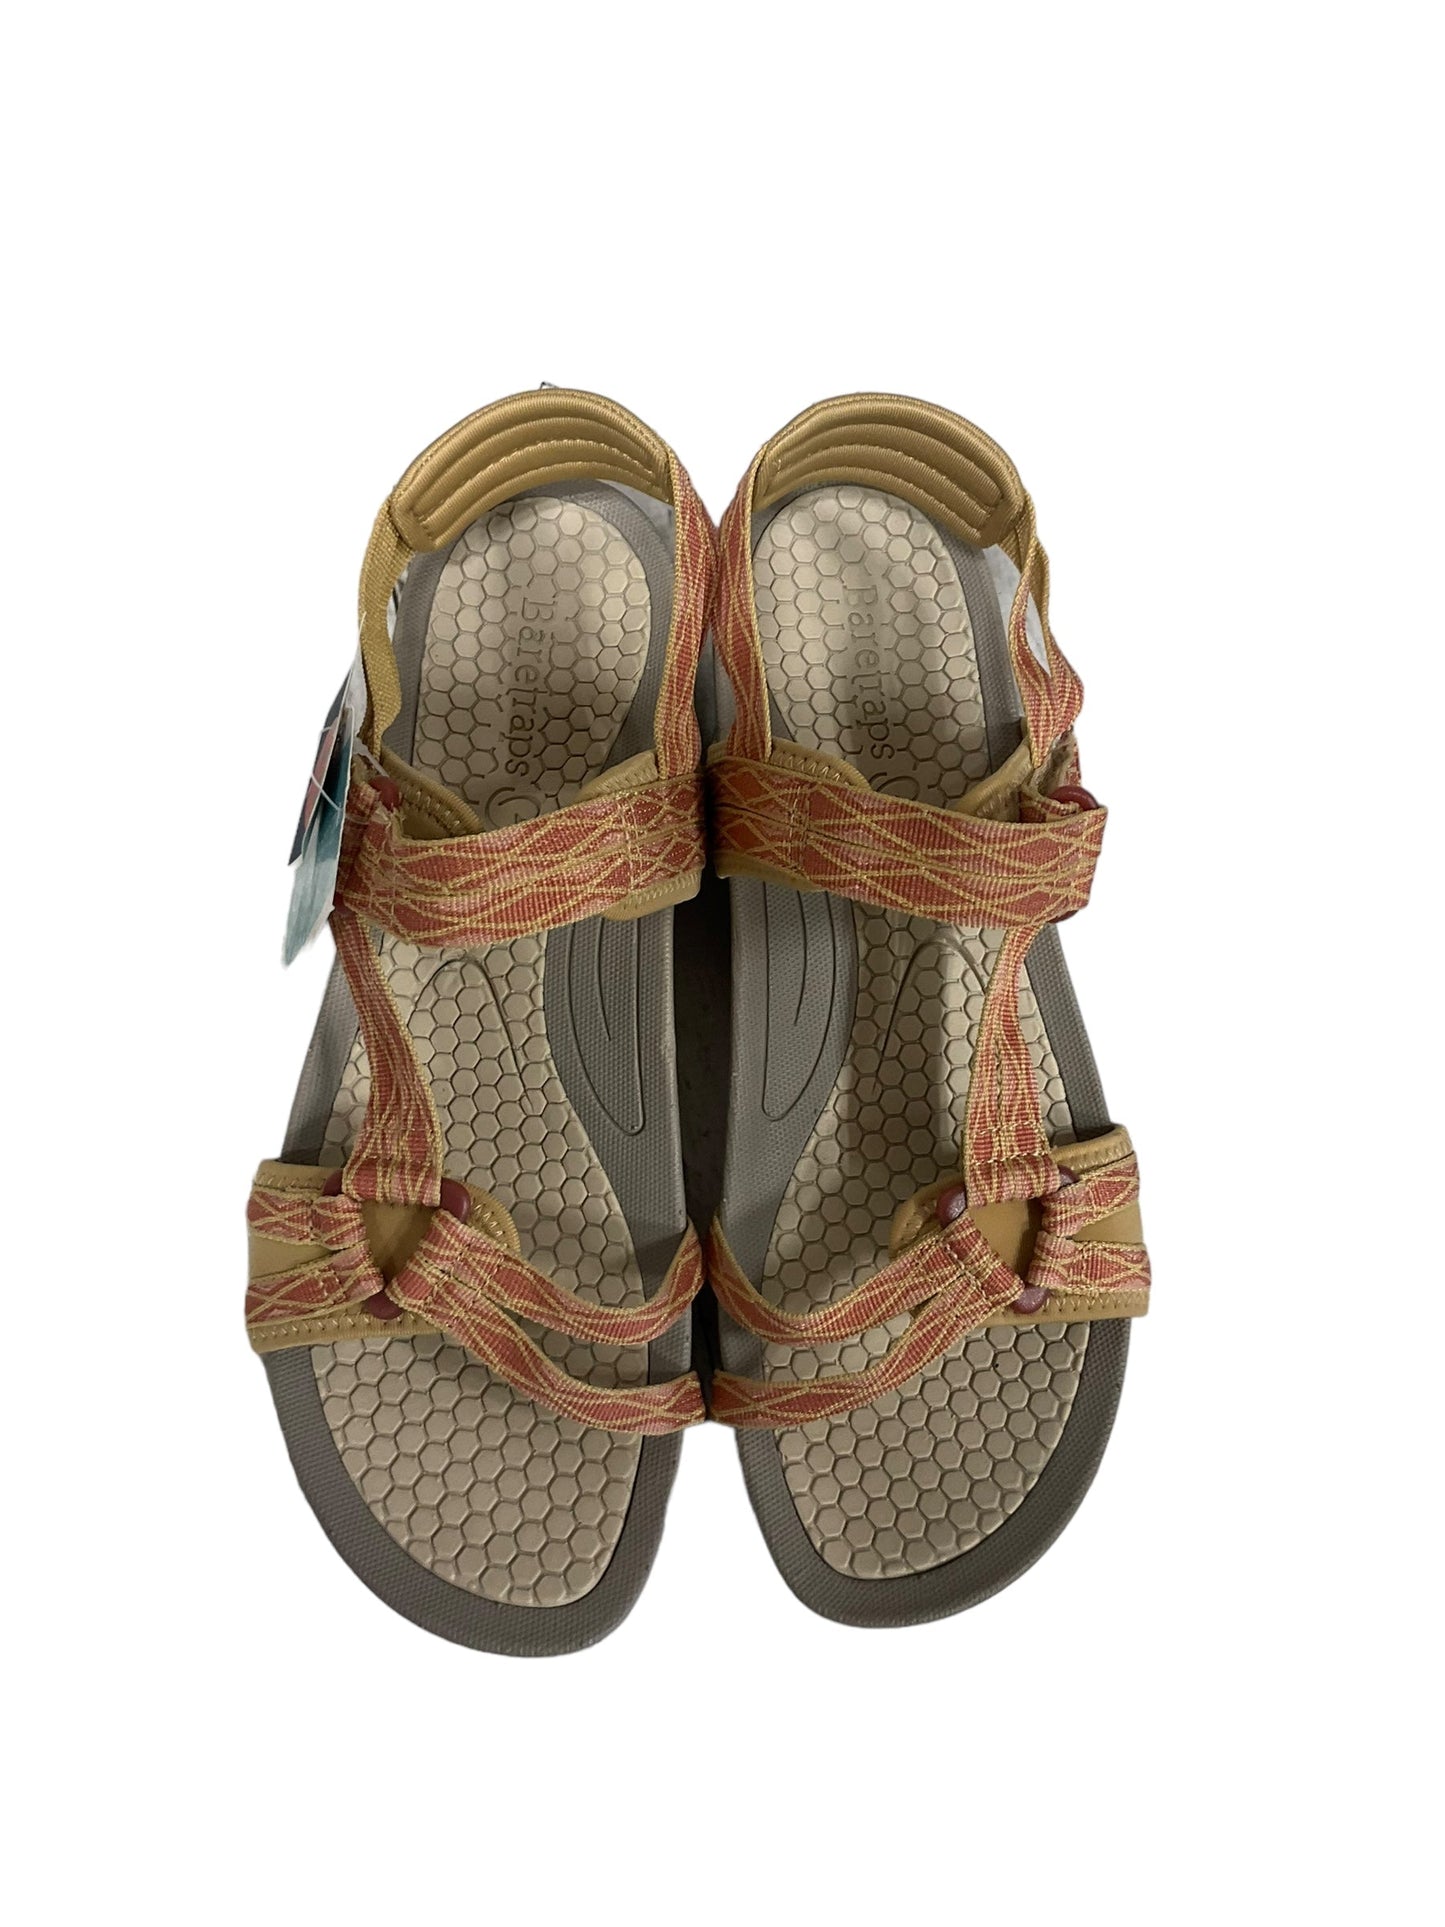 Multi-colored Sandals Flats Bare Traps, Size 10